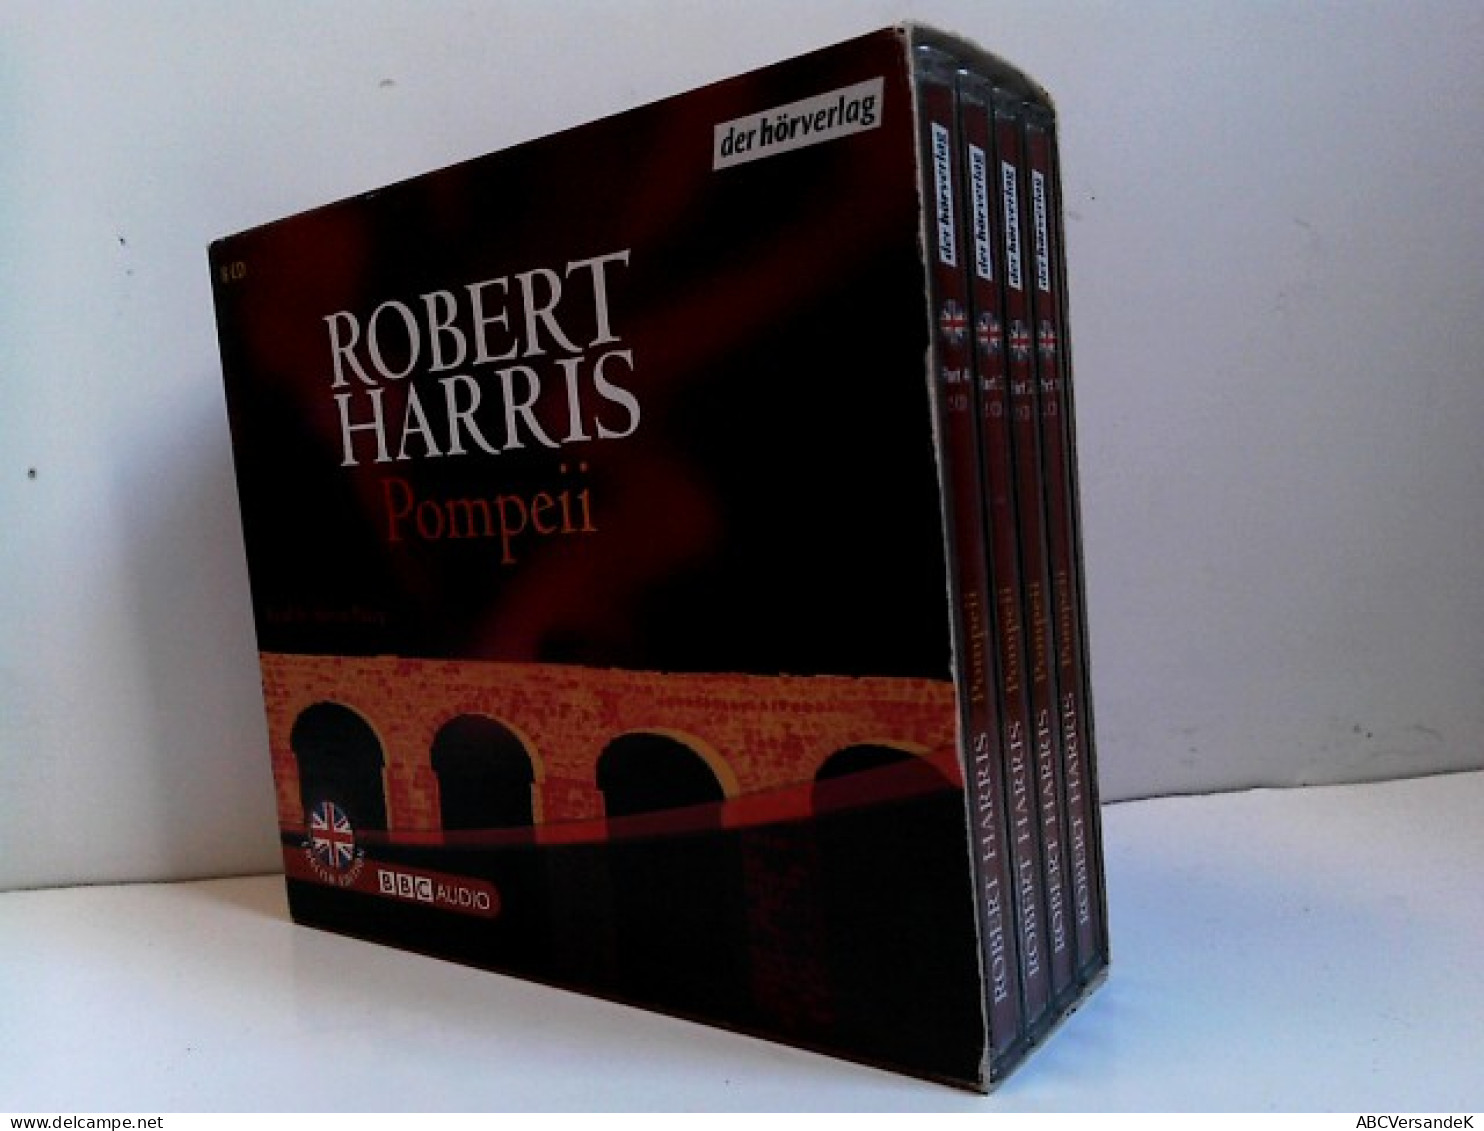 Pompeii: Vollständige Lesung. Level: Intermediate (BBC) - CD